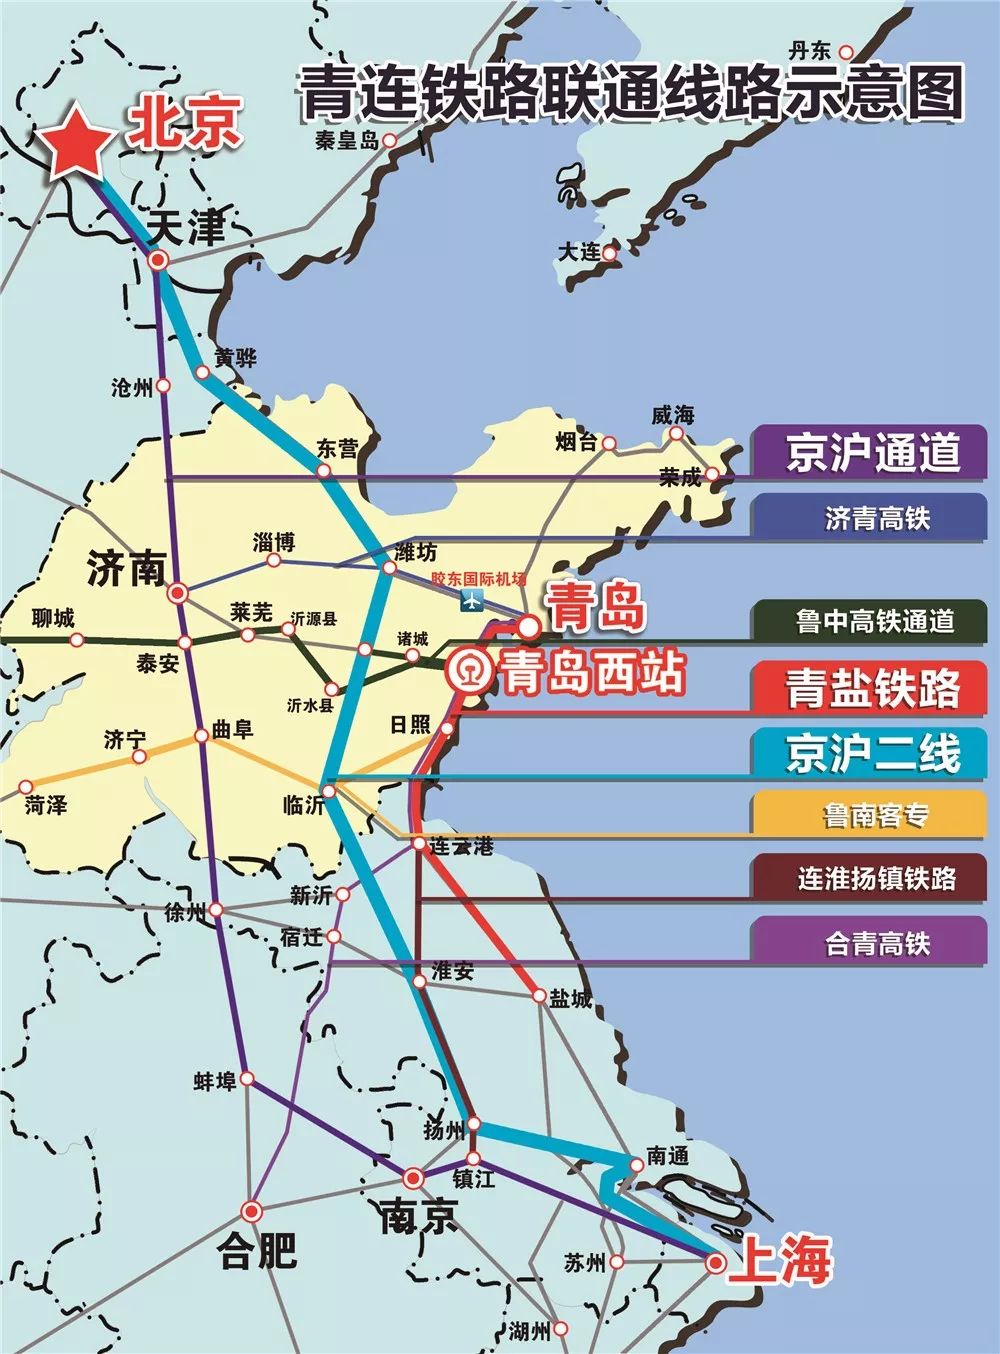 青岛西站预计下月通车!青盐铁路列车运行时刻表出炉!